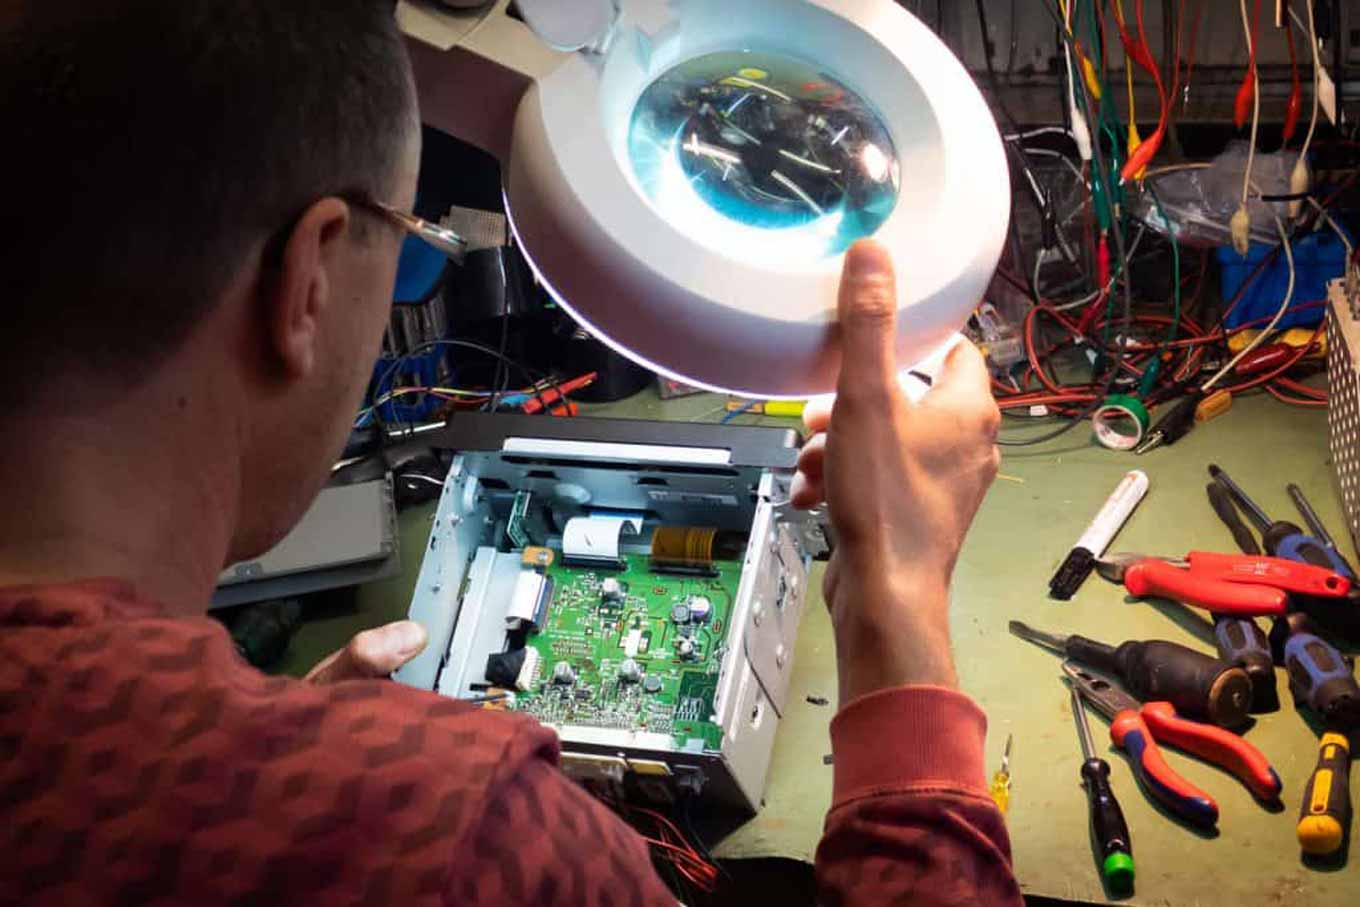 Een andere man inspecteert een elektronisch voorwerp met behulp van een lamp